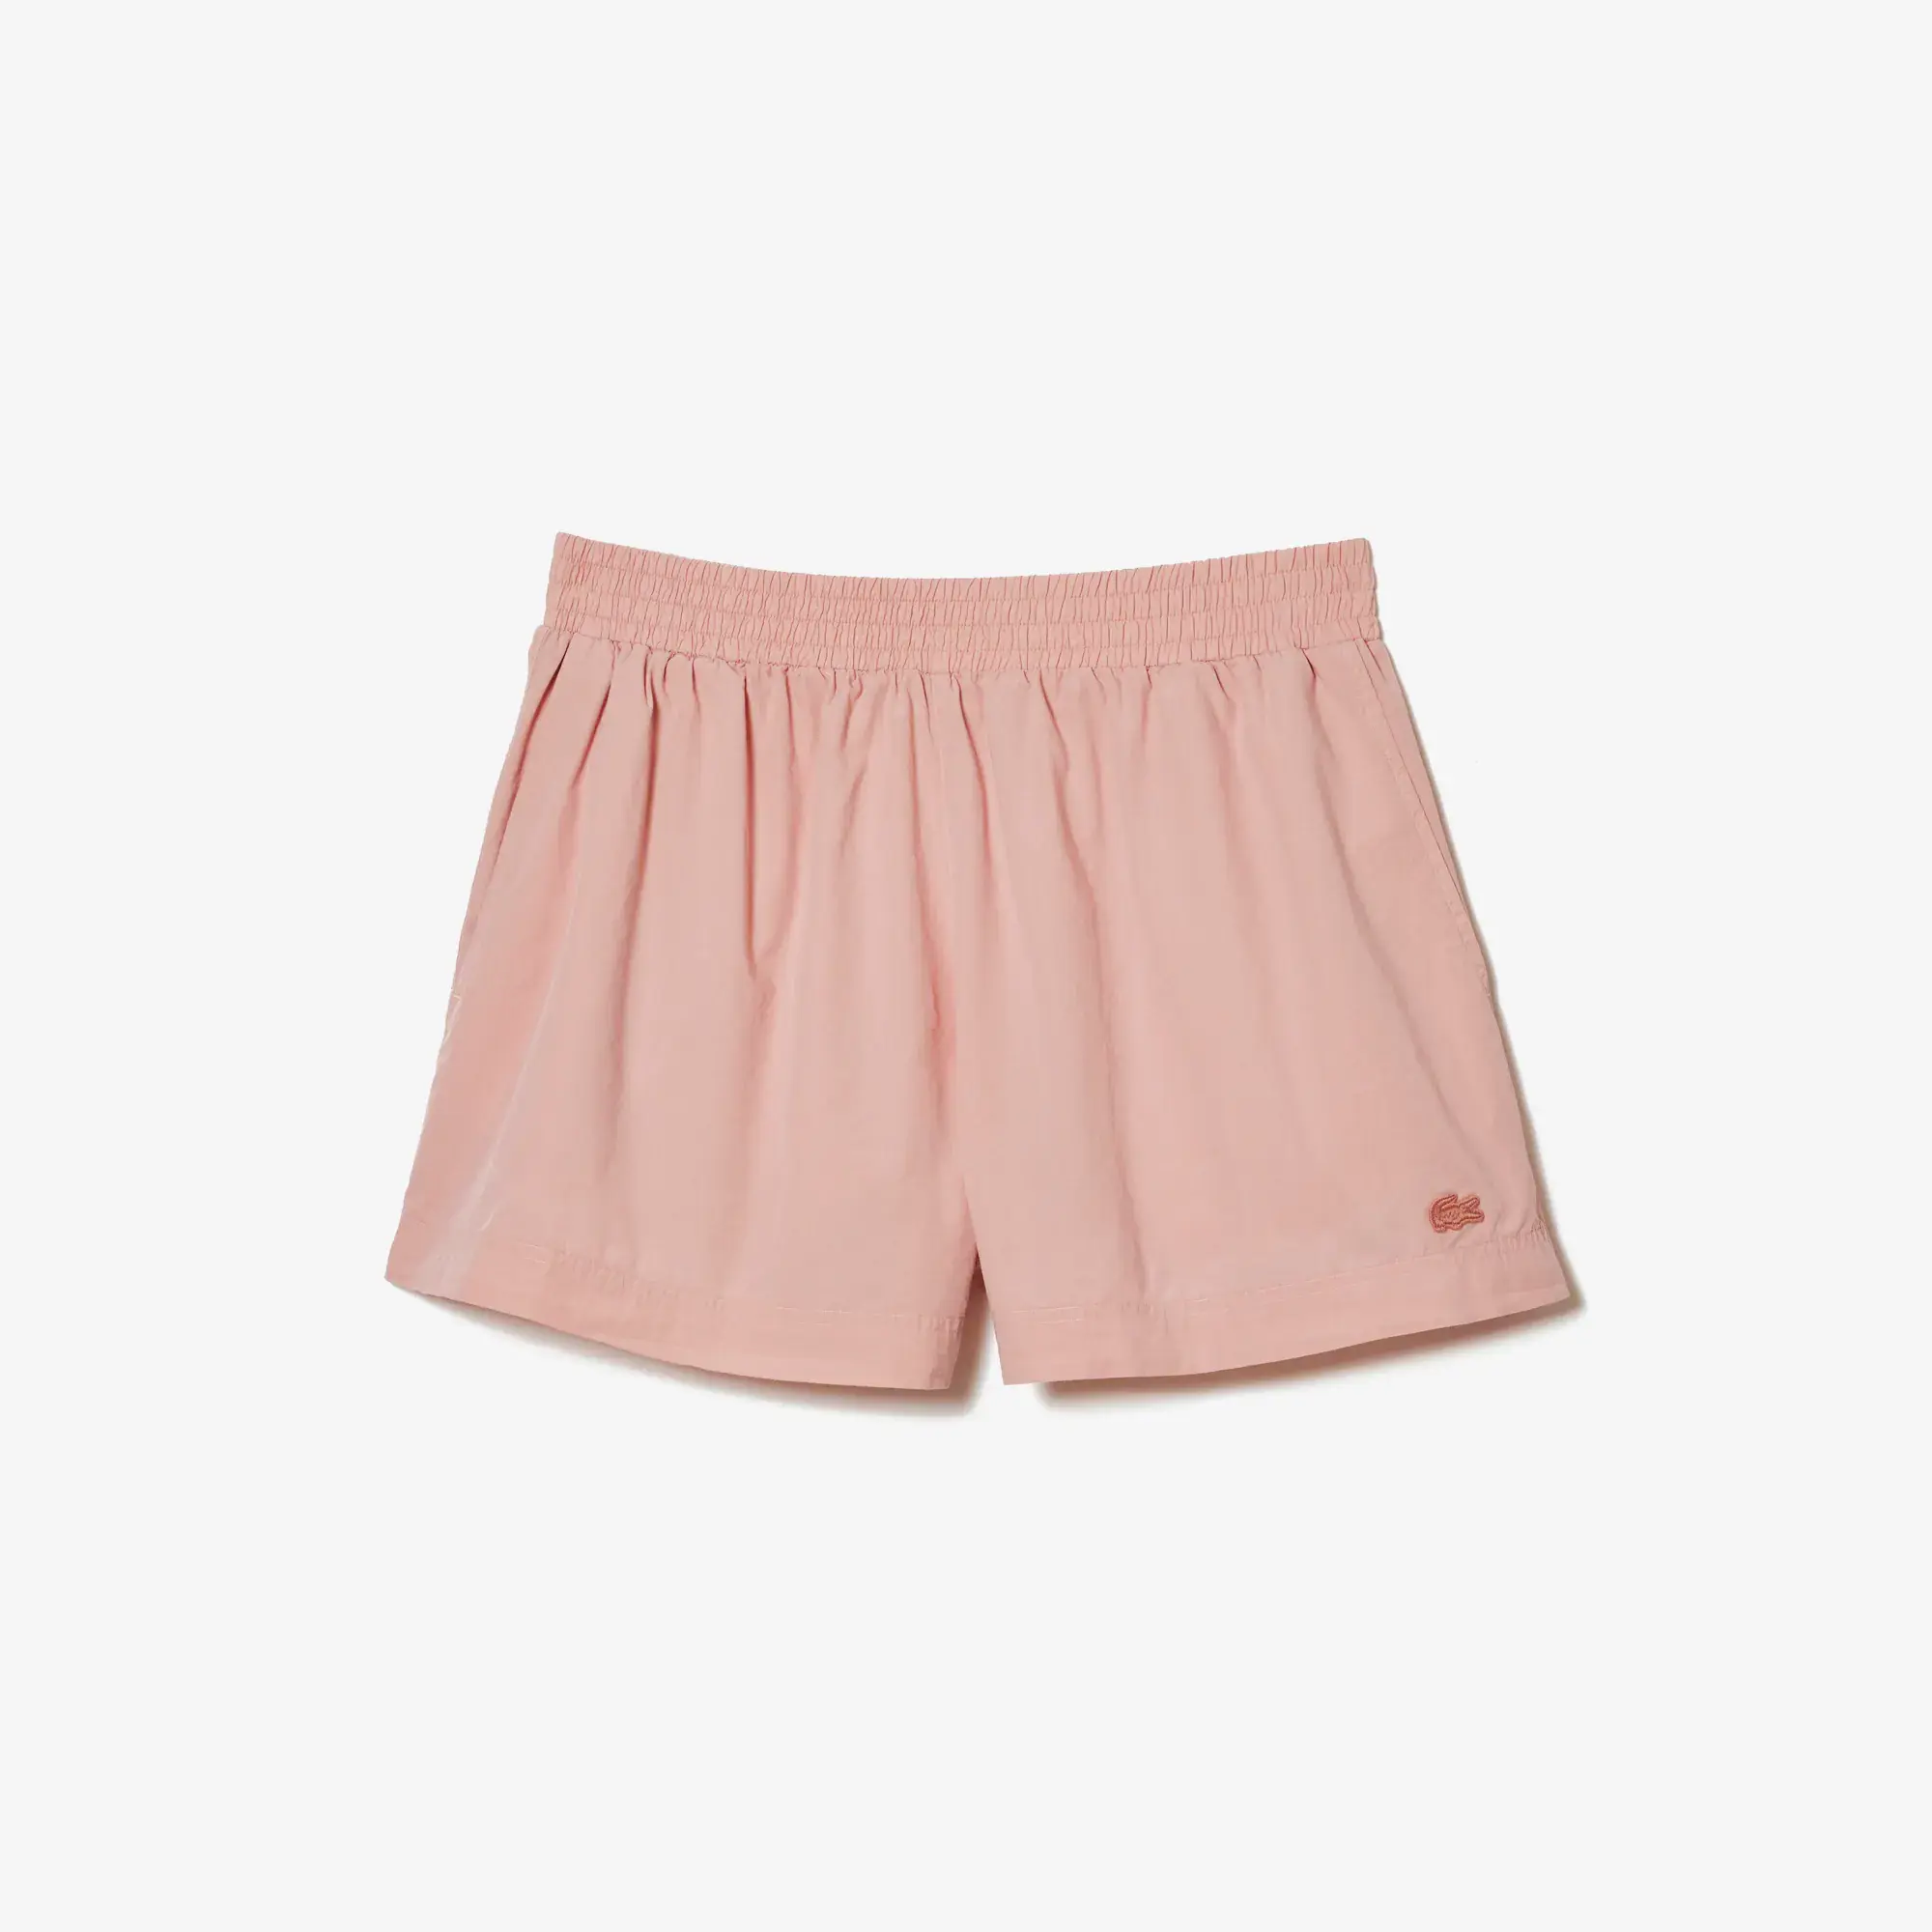 Lacoste Women’s Cotton Poplin Shorts. 1